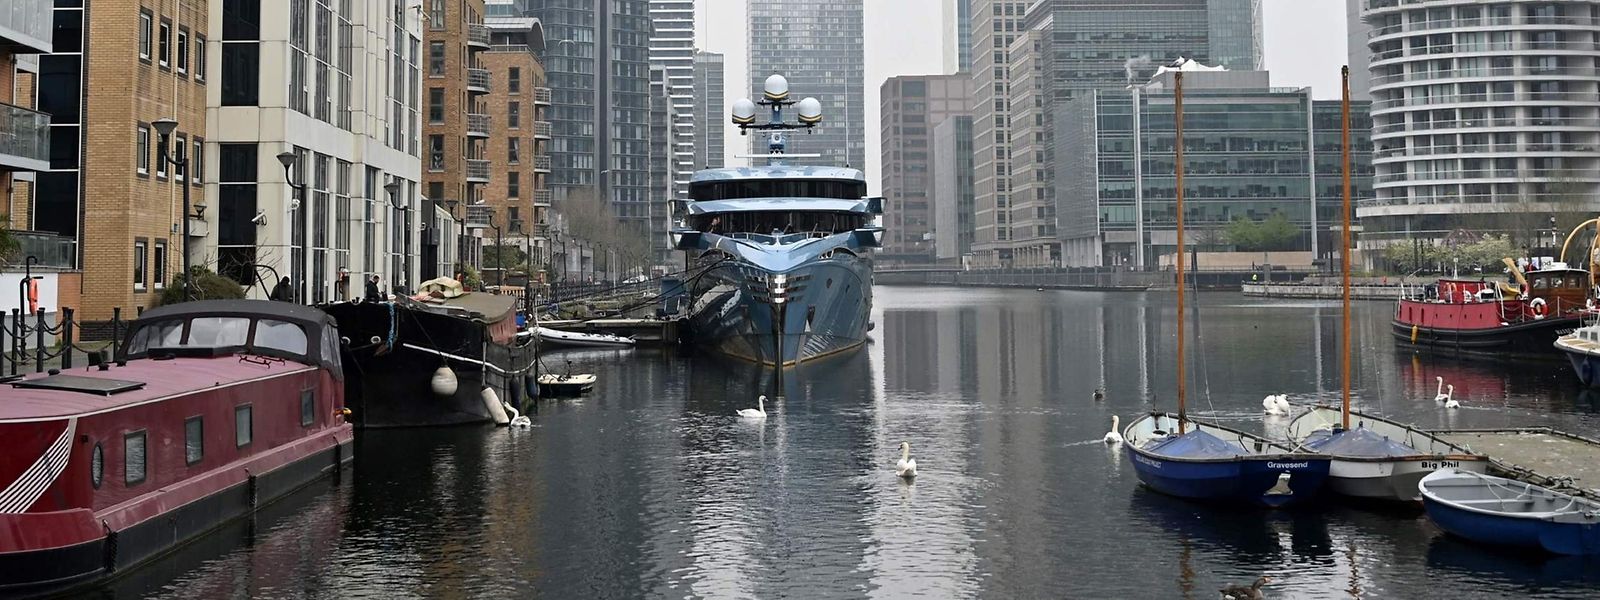 Die Superjacht „Phi“ in einem Dock im Londoner Finanzviertel Canary Wharf.  